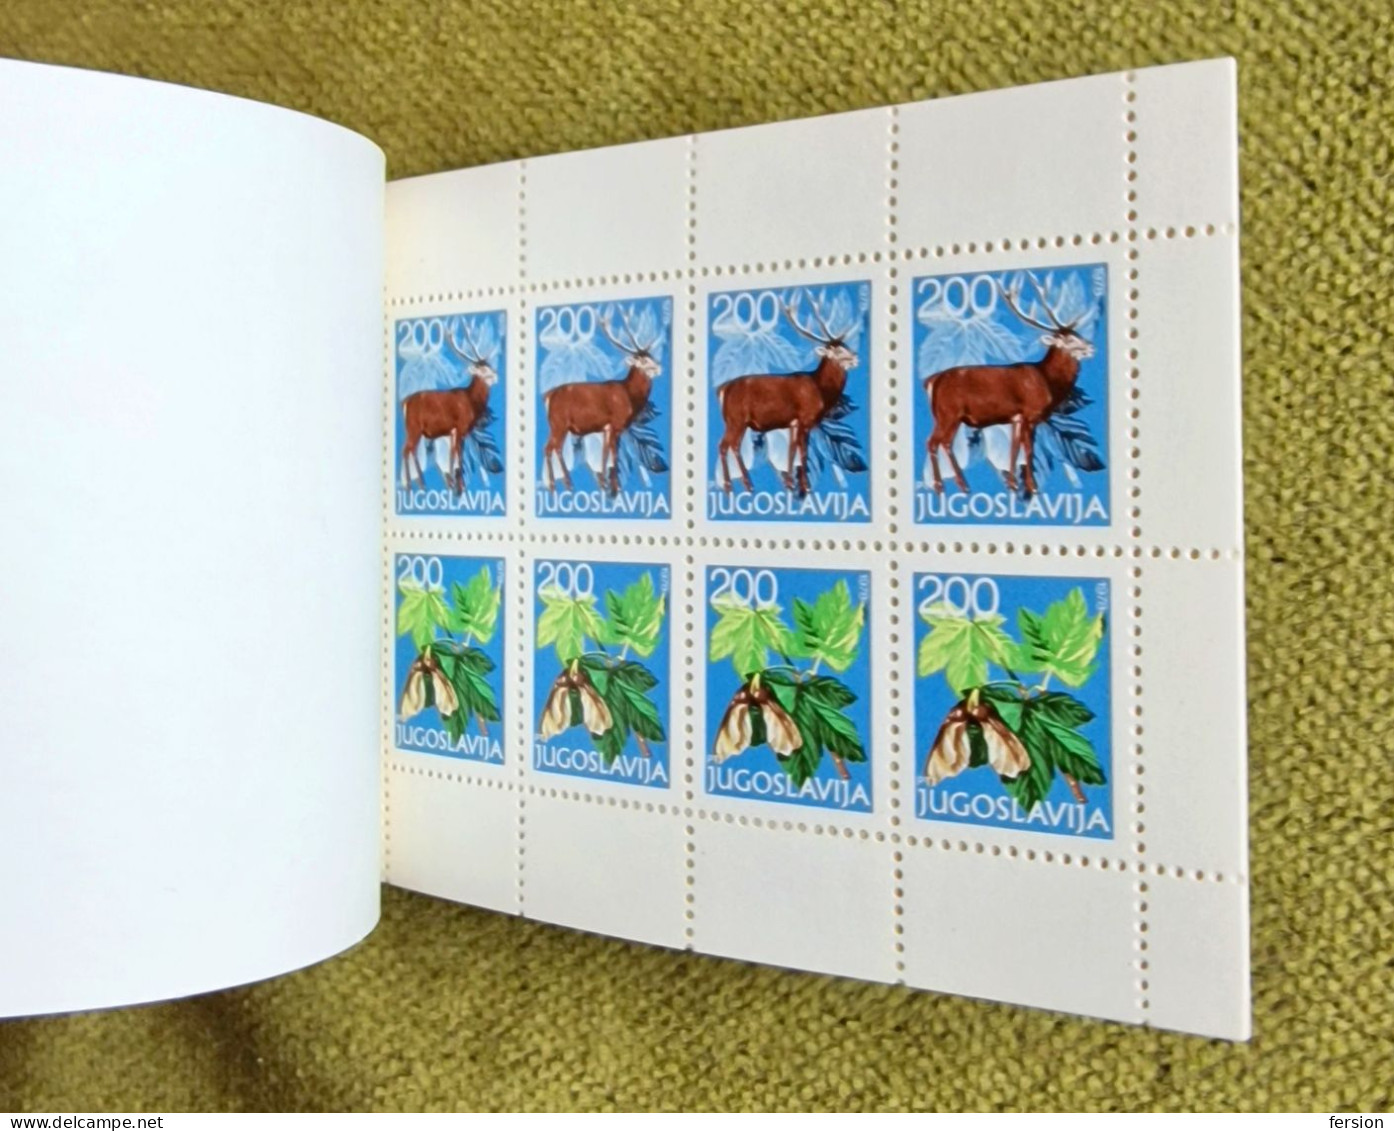 1978 - Yugoslavia - SHIP In A Bottle - BOOKLET - MNH / Deer Butterfly Grouse Bird Oak Corn Tree / FLORA FAUNA - Booklets